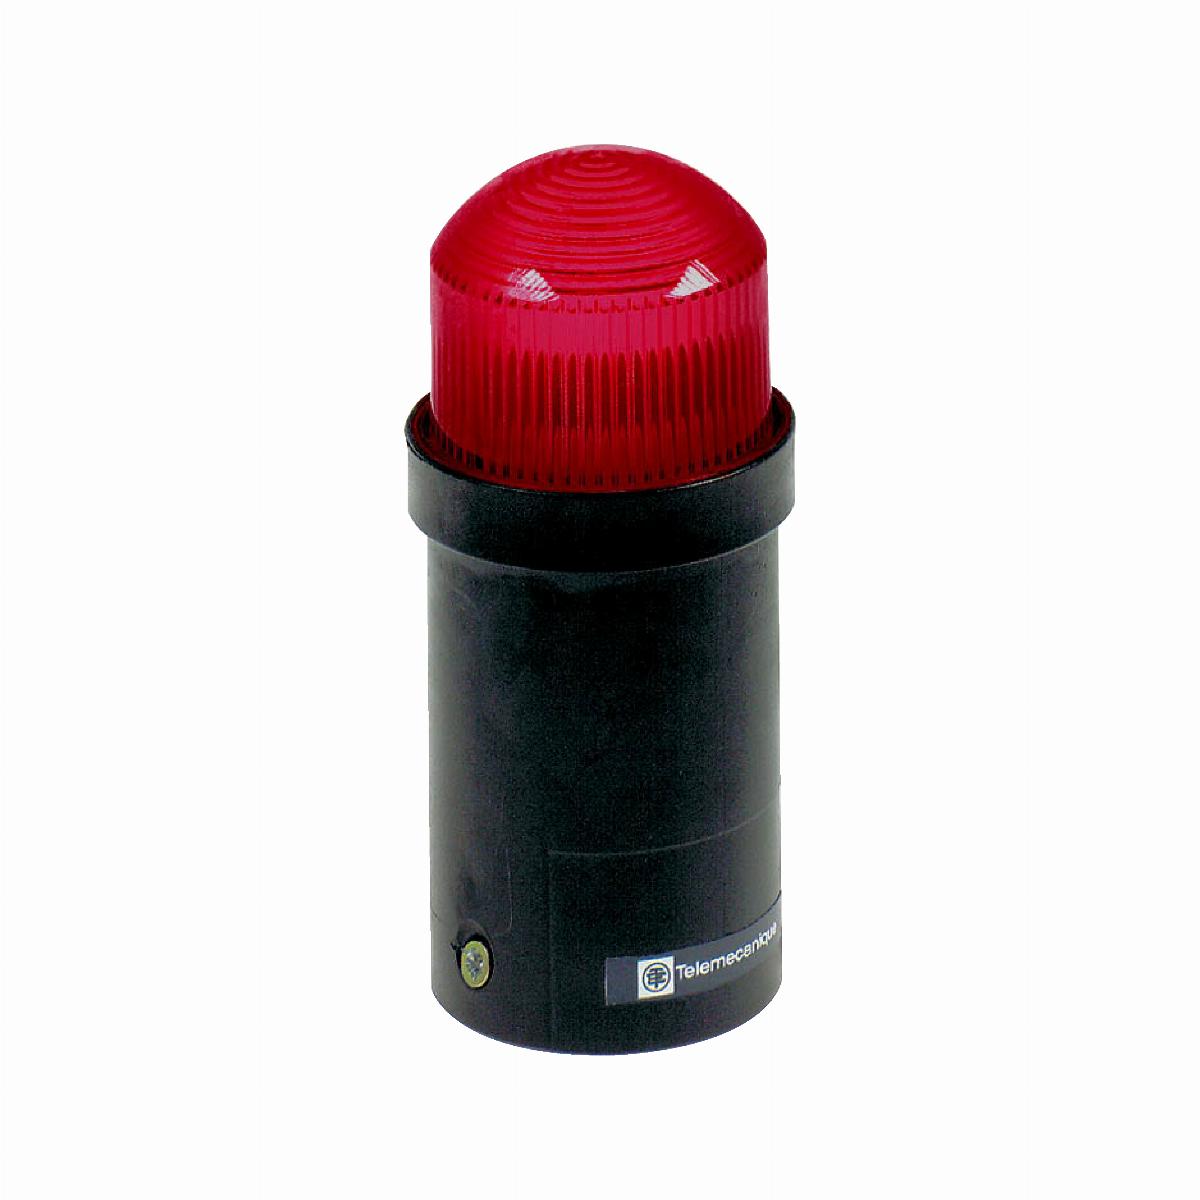 Element świetlny błyskowy Ø45 czerwony lampa wyładowcza 1J 230V